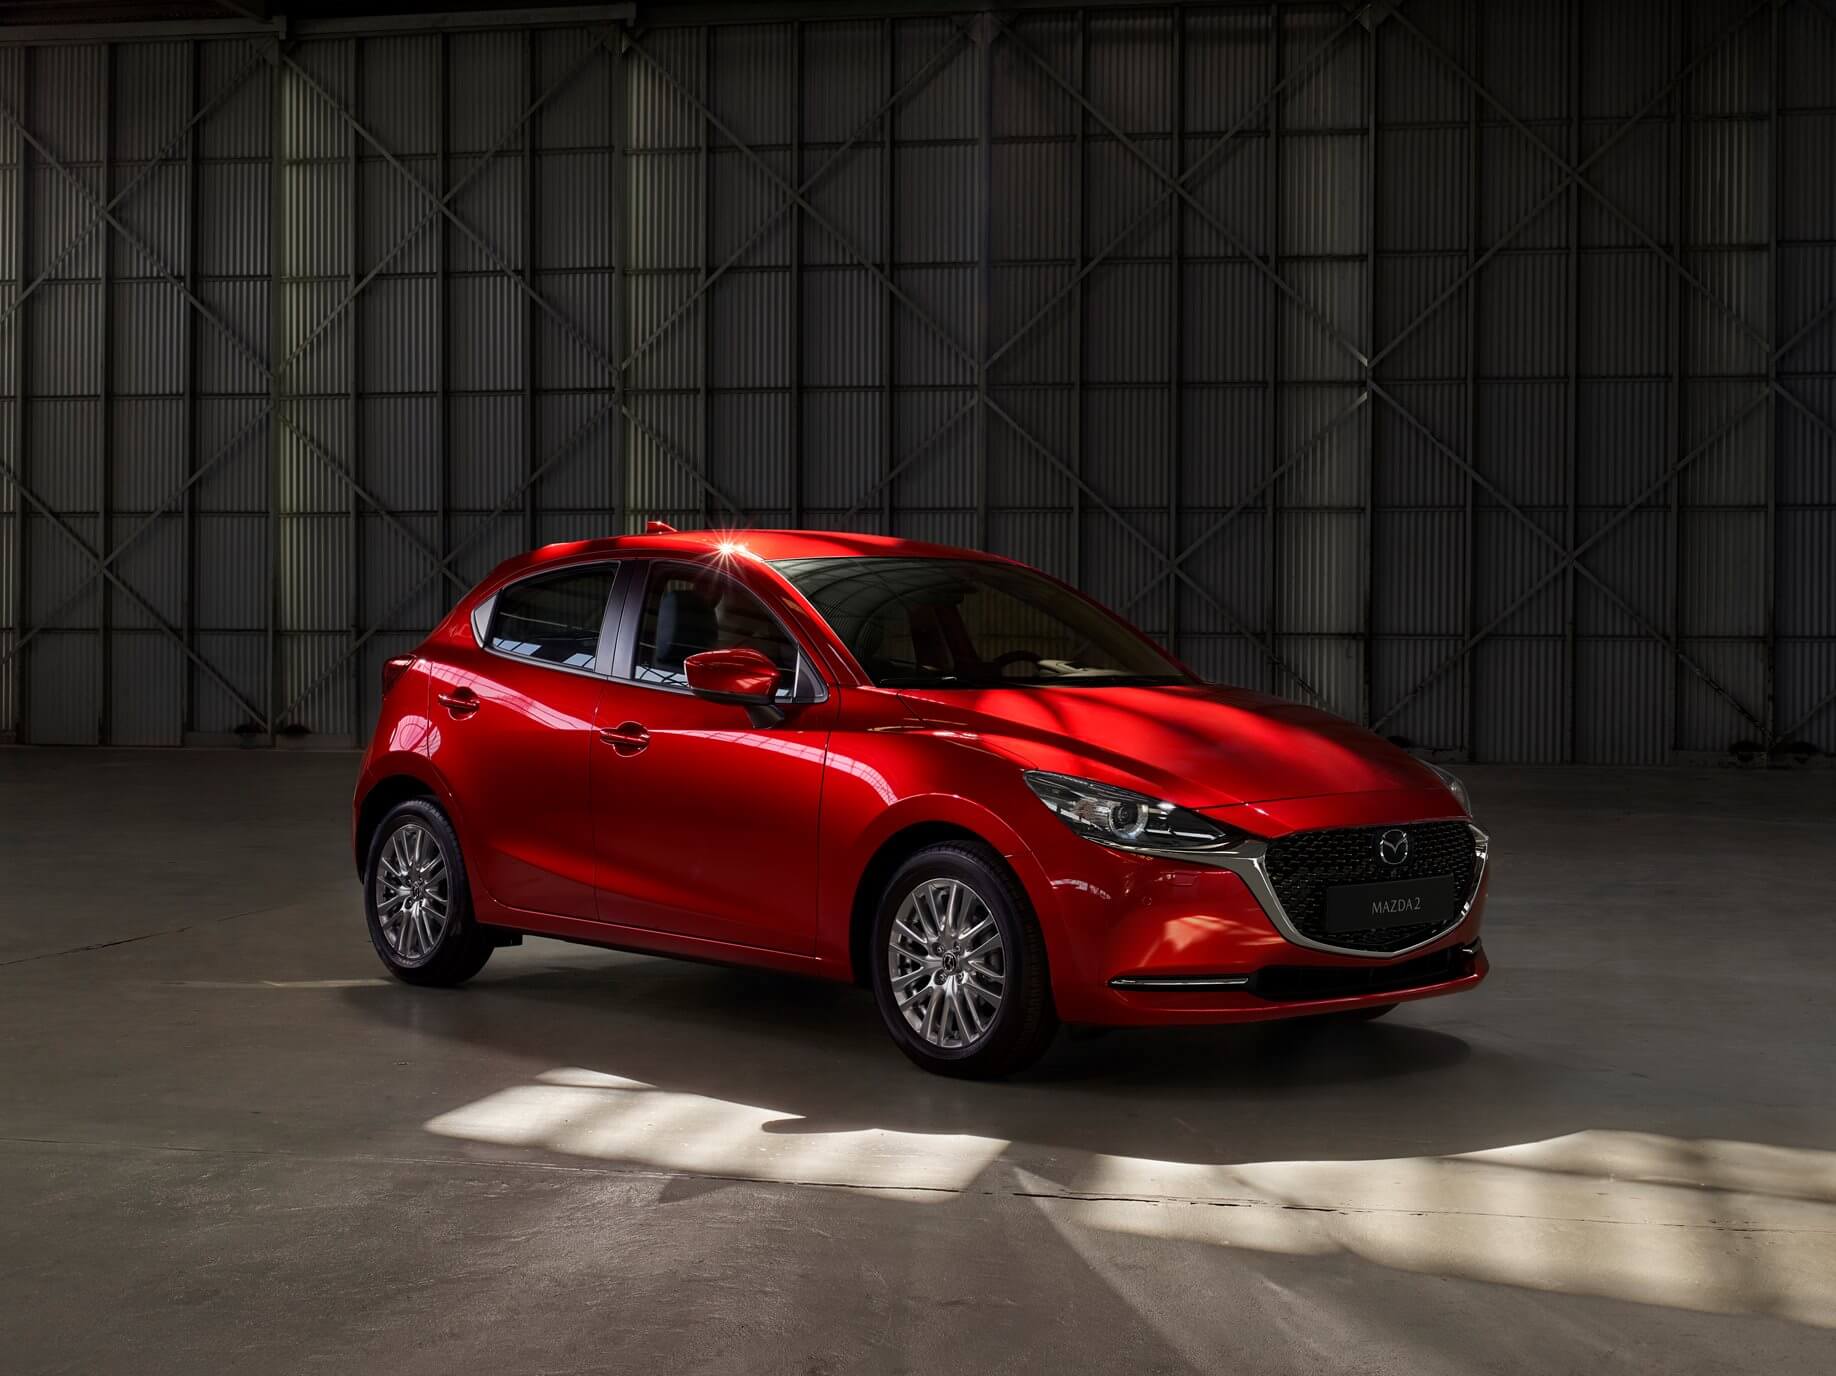 Mazda2 イギリス仕様 が販売店に到着している模様 K Blog Next